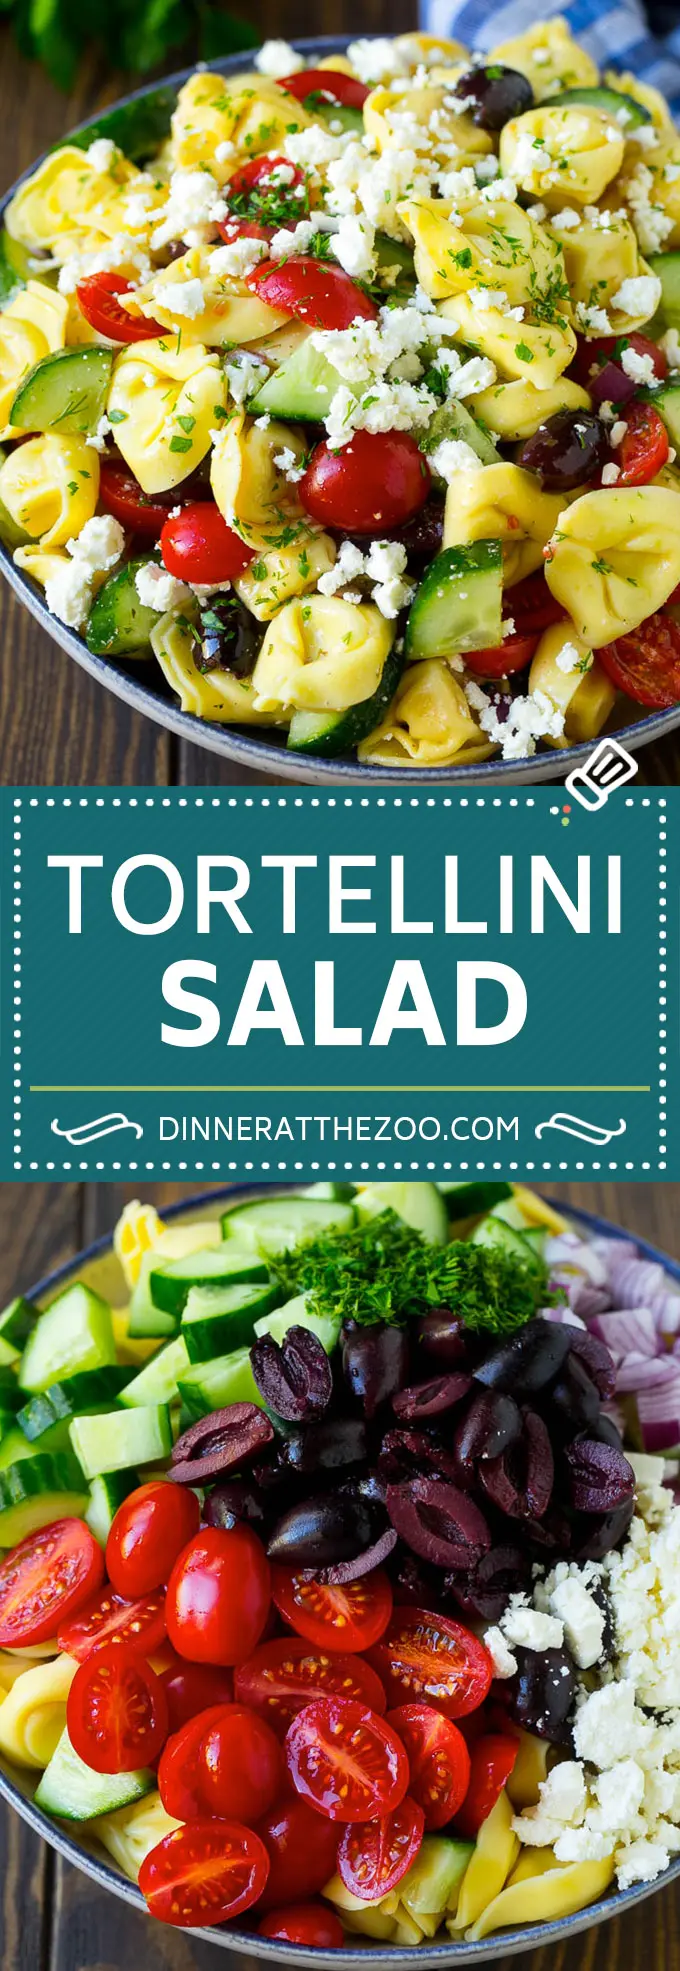 Kreikkalainen Tortellinisalaattiresepti | Pastasalaatti | Tortellinisalaatti | Kreikkalainen salaatti #kreikkalainen #tortellini #pasta #salaatti #kurkut #oliivit #illallinen #dinner #dinneratthezoo